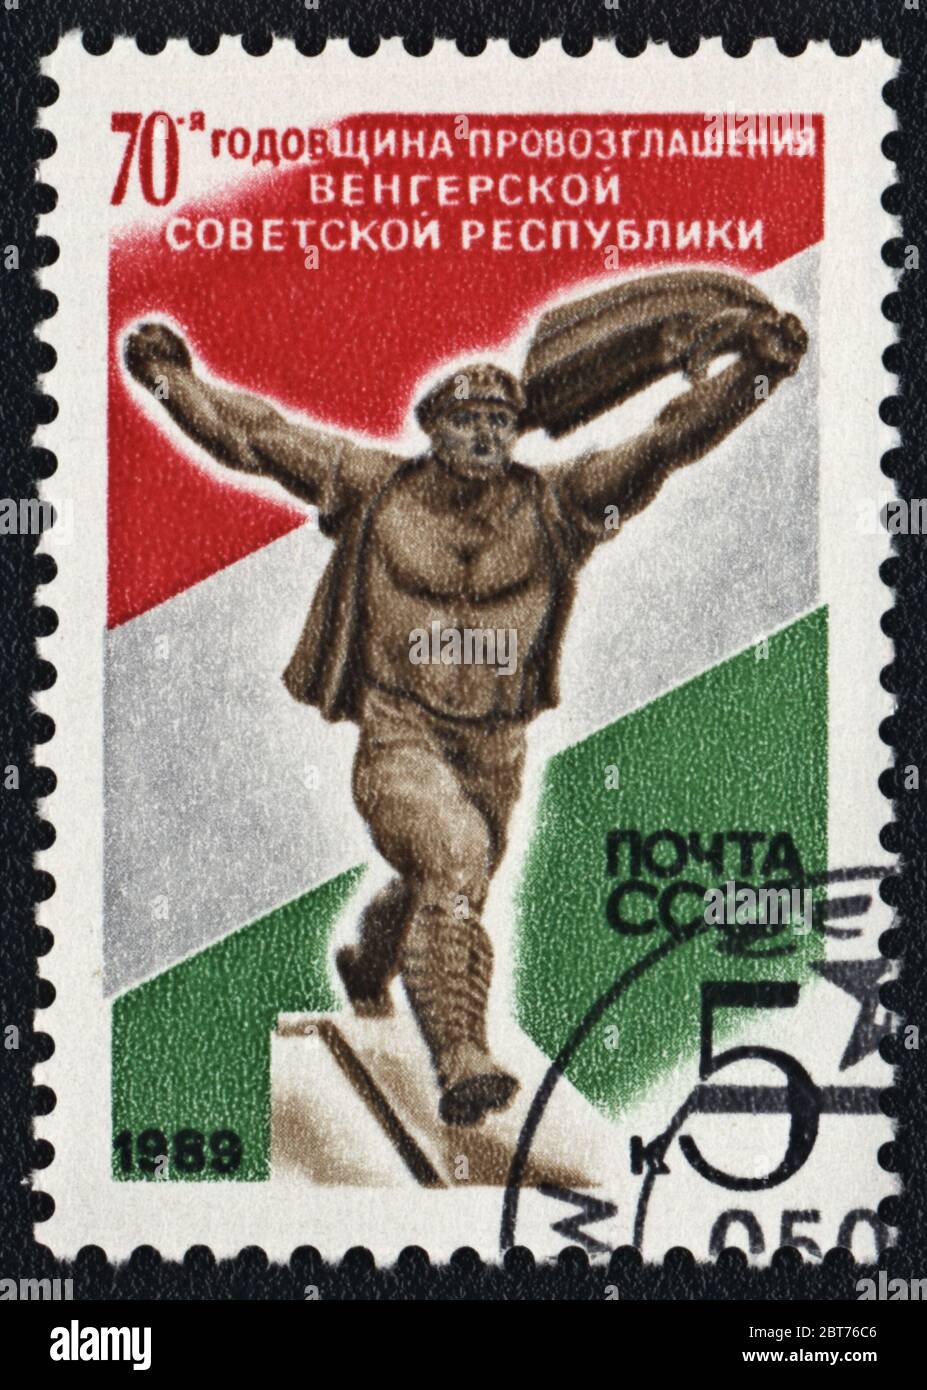 70e anniversaire de la Proclamation de la République soviétique hongroise. Timbre-poste URSS, 1989 Banque D'Images